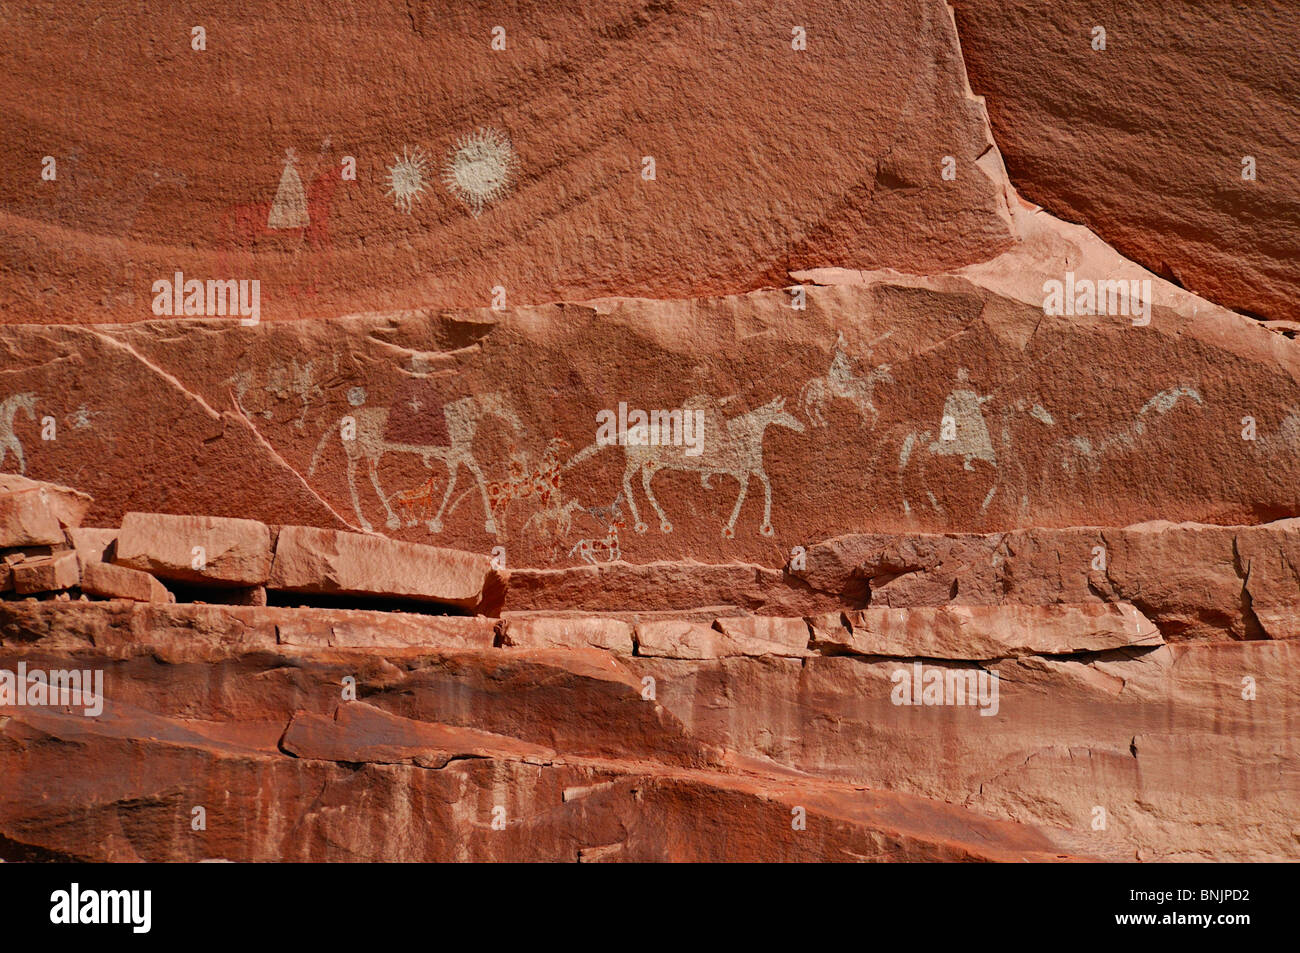 Le pictogramme de cavaliers espagnols Canyon del Muerto Canyon de Chelly National Monument Arizona USA Amérique du Nord pierre voyage Banque D'Images